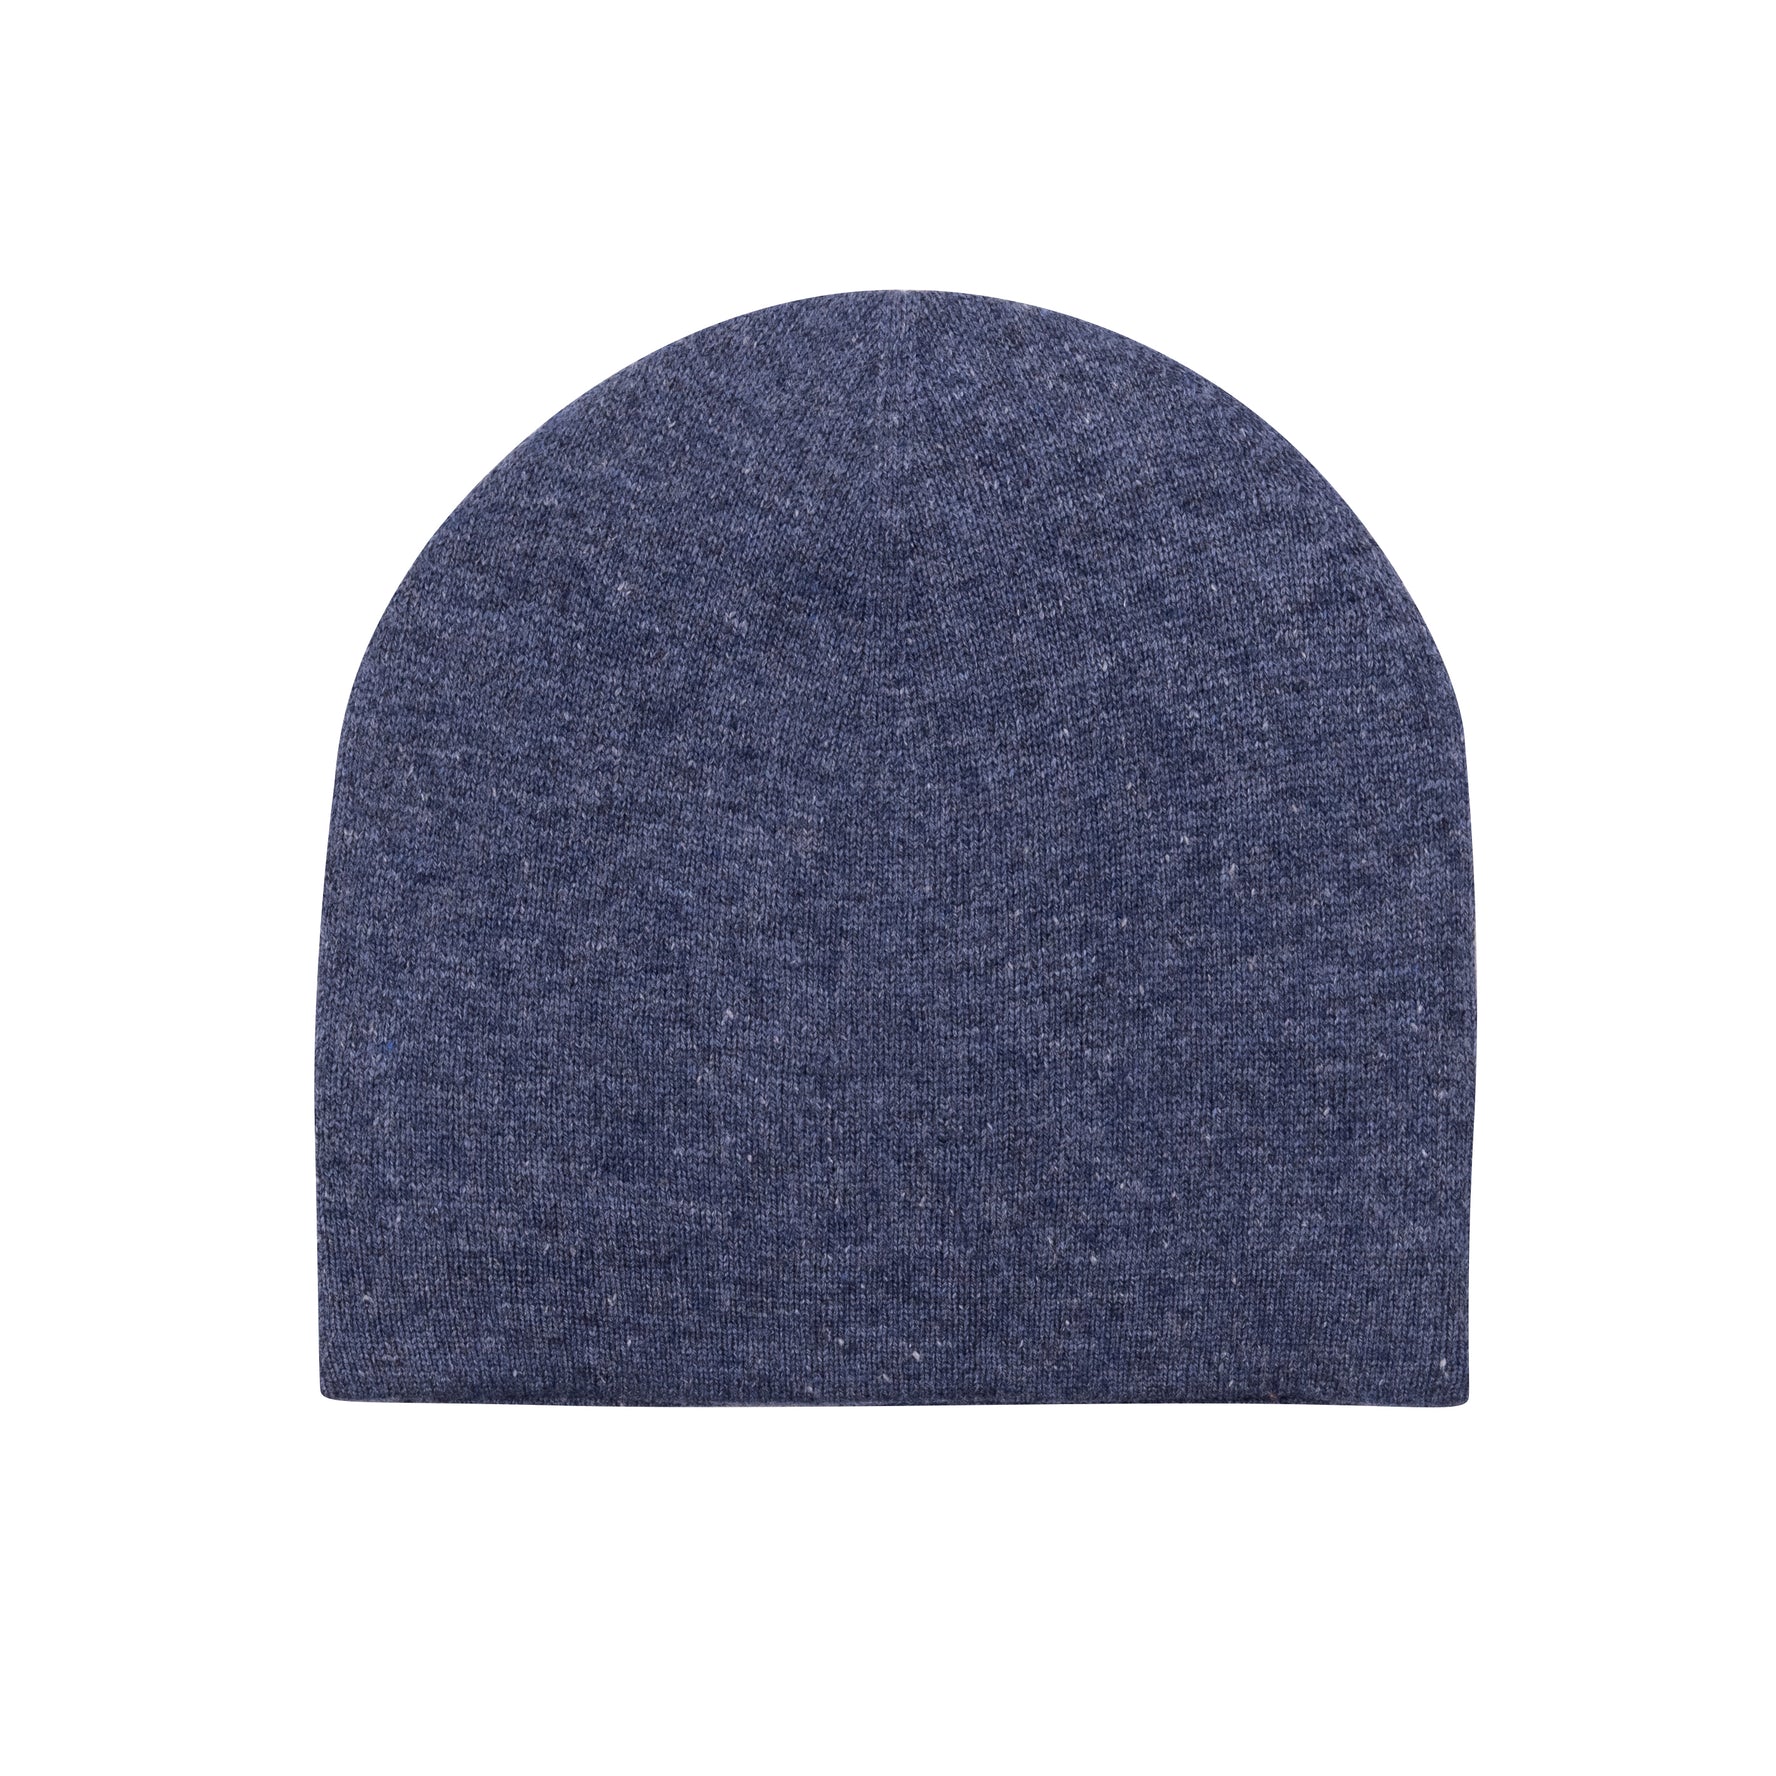 Bonnet bonnet cachemire lisse bleu foncé